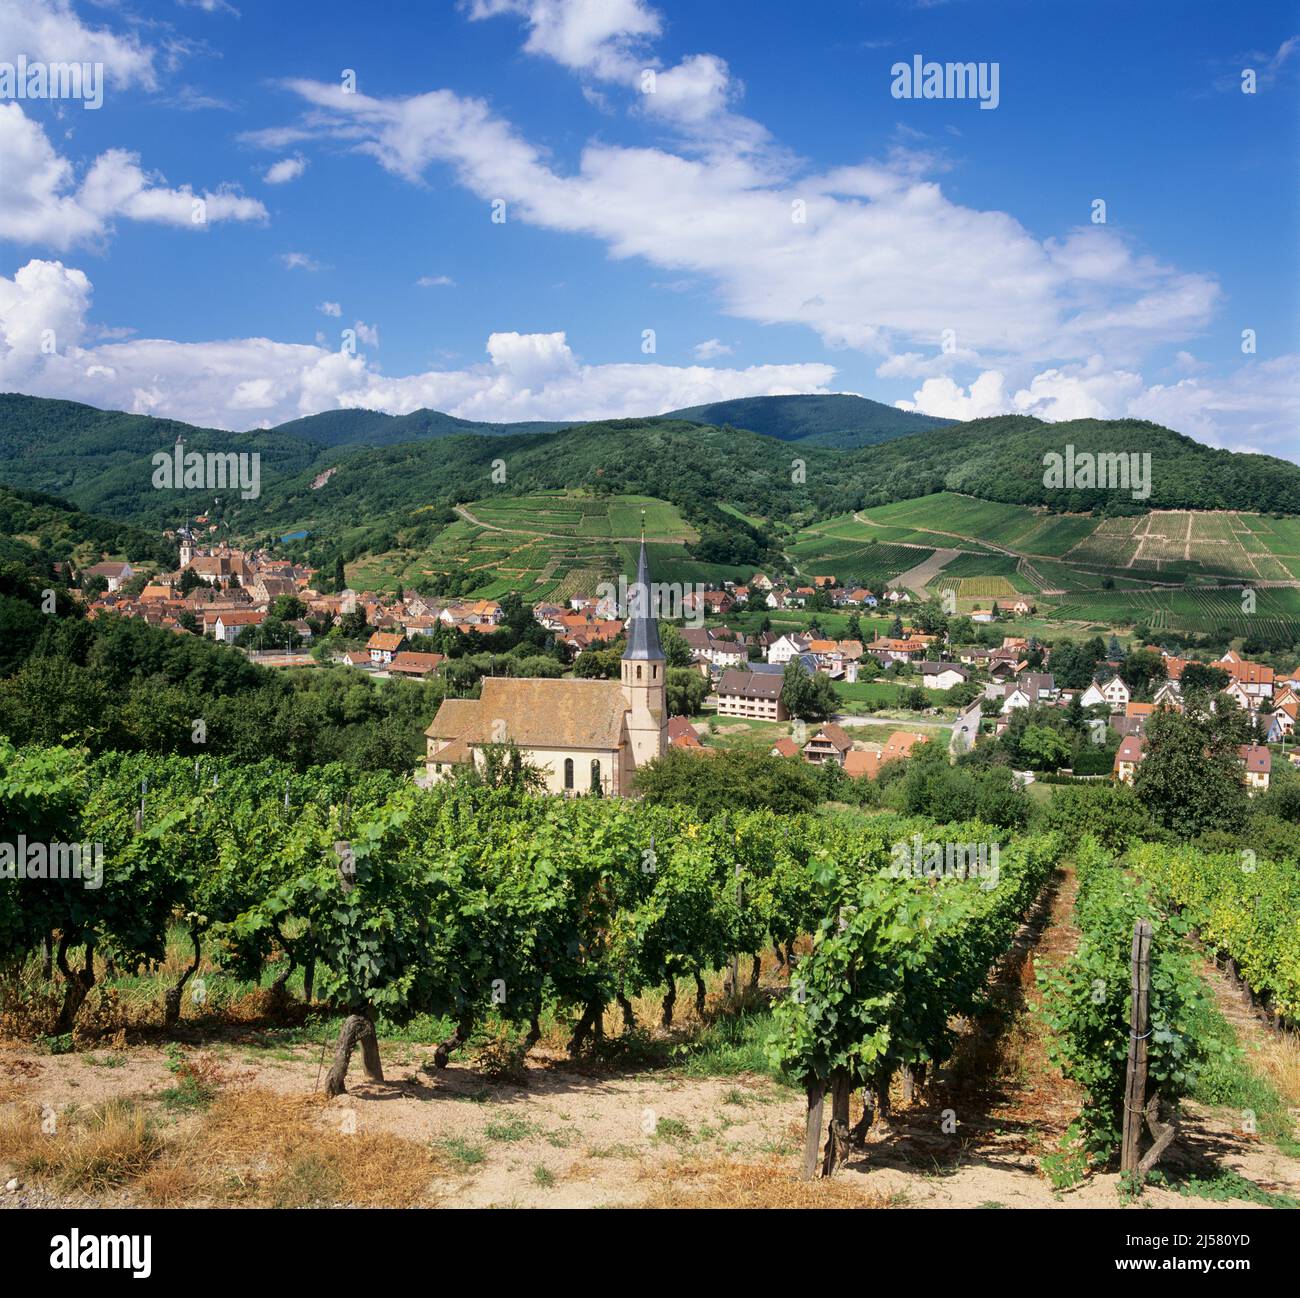 Blick auf die Weinberge und das Dorf Andlau, Andlau, Elsass, Frankreich, Europa Stockfoto